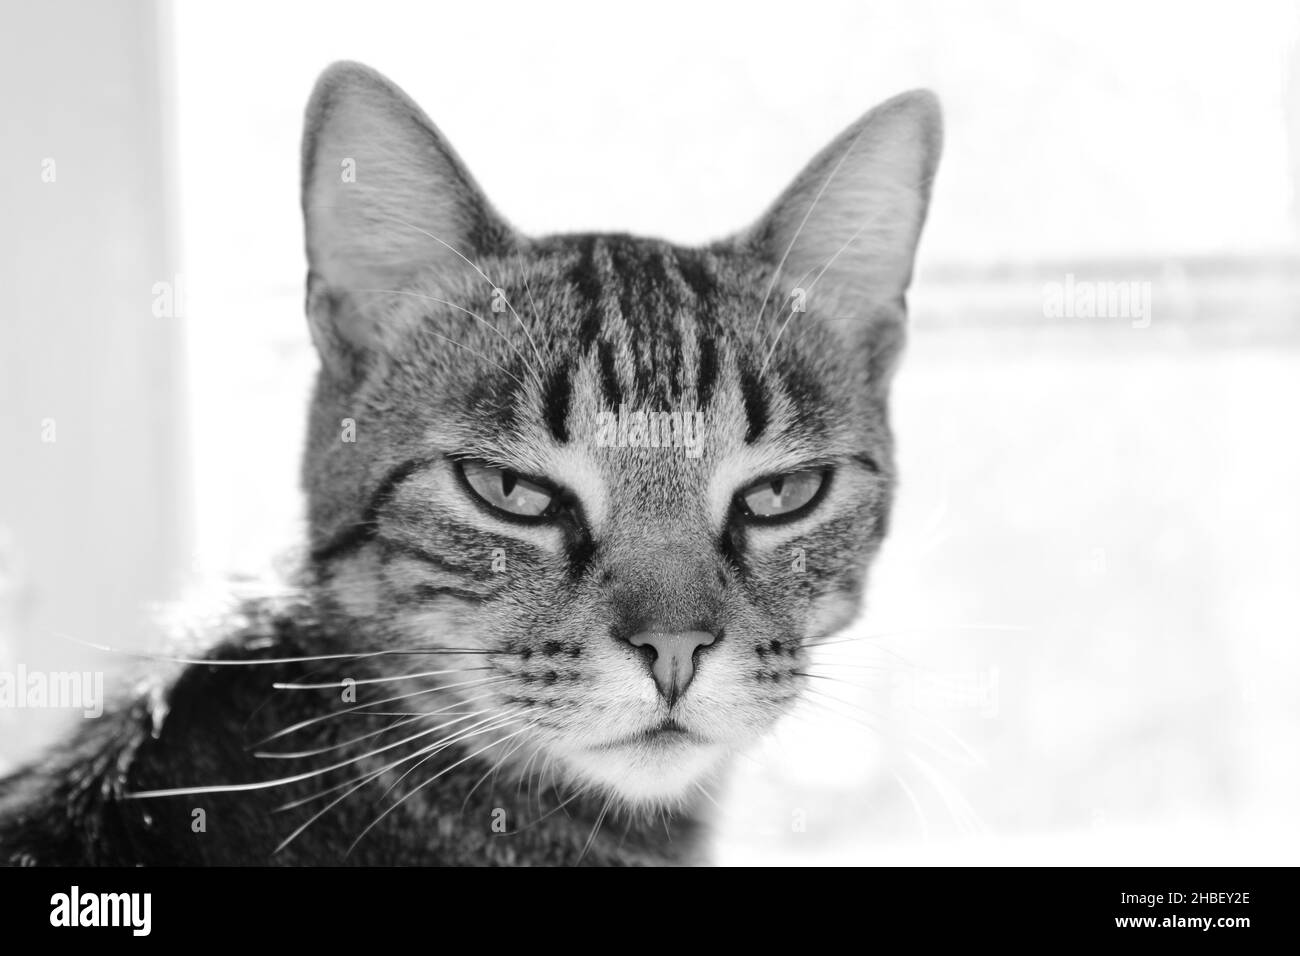 Gatto grumpy inimpressionato in bianco e nero Foto Stock